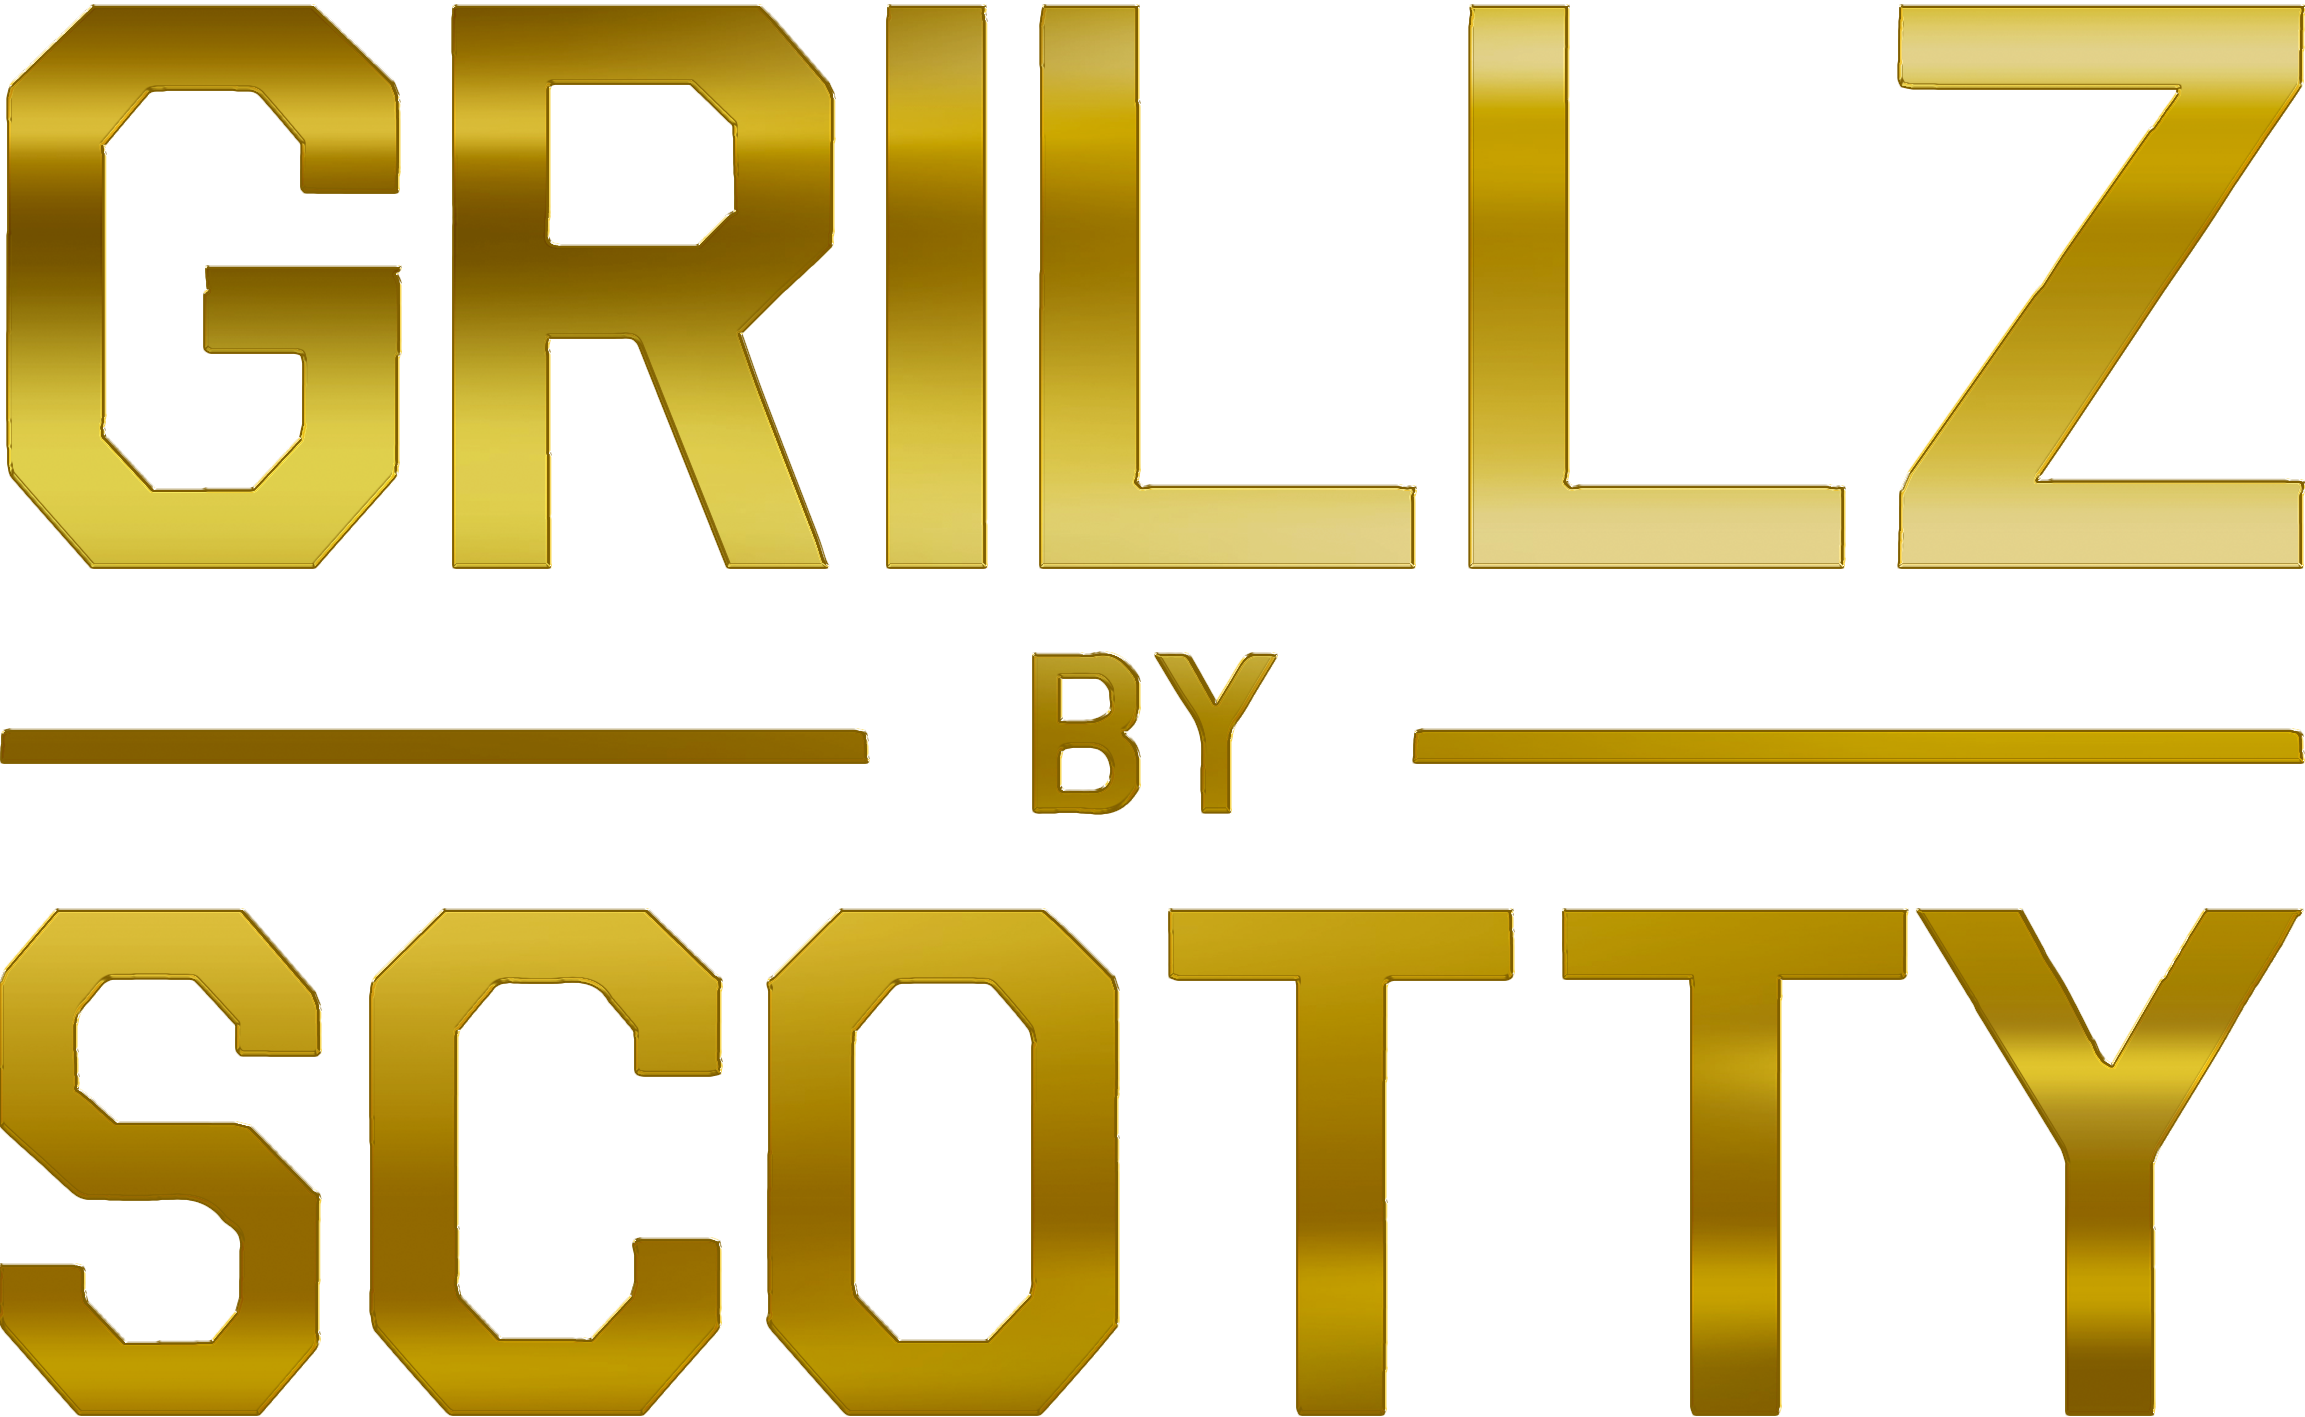 CUSTOM GRILLZ – Grillz by Scotty